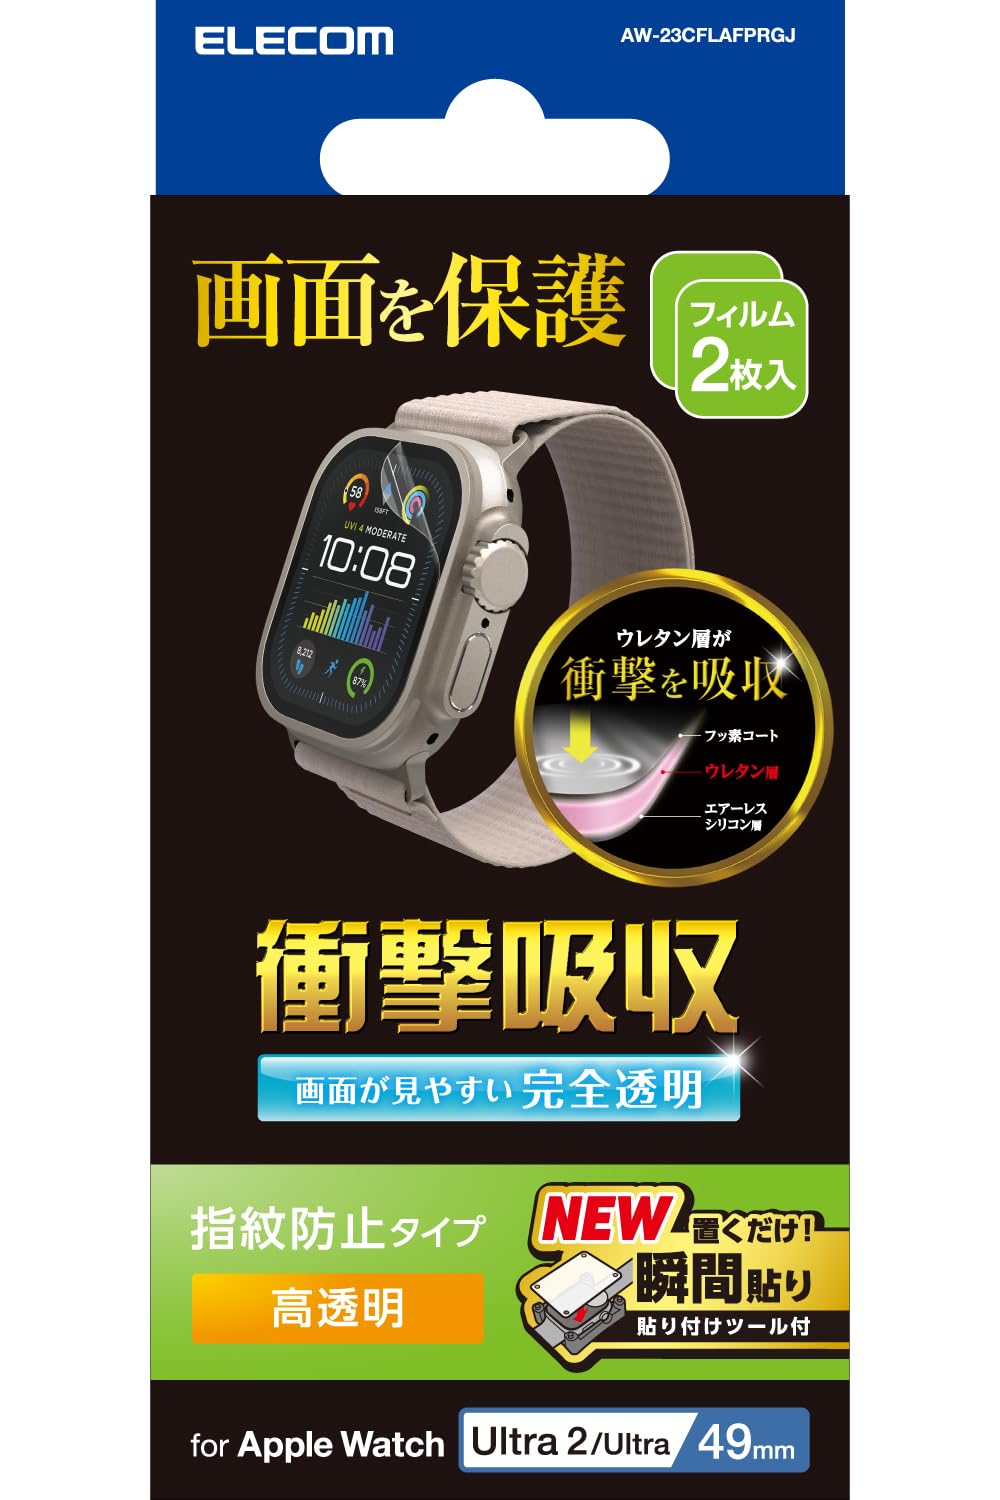 GR Apple Watch 49mm Ultra2 Ultra tB 2 S Ռz \tc[  wh~ NA AW-23CFLAFPRGJ